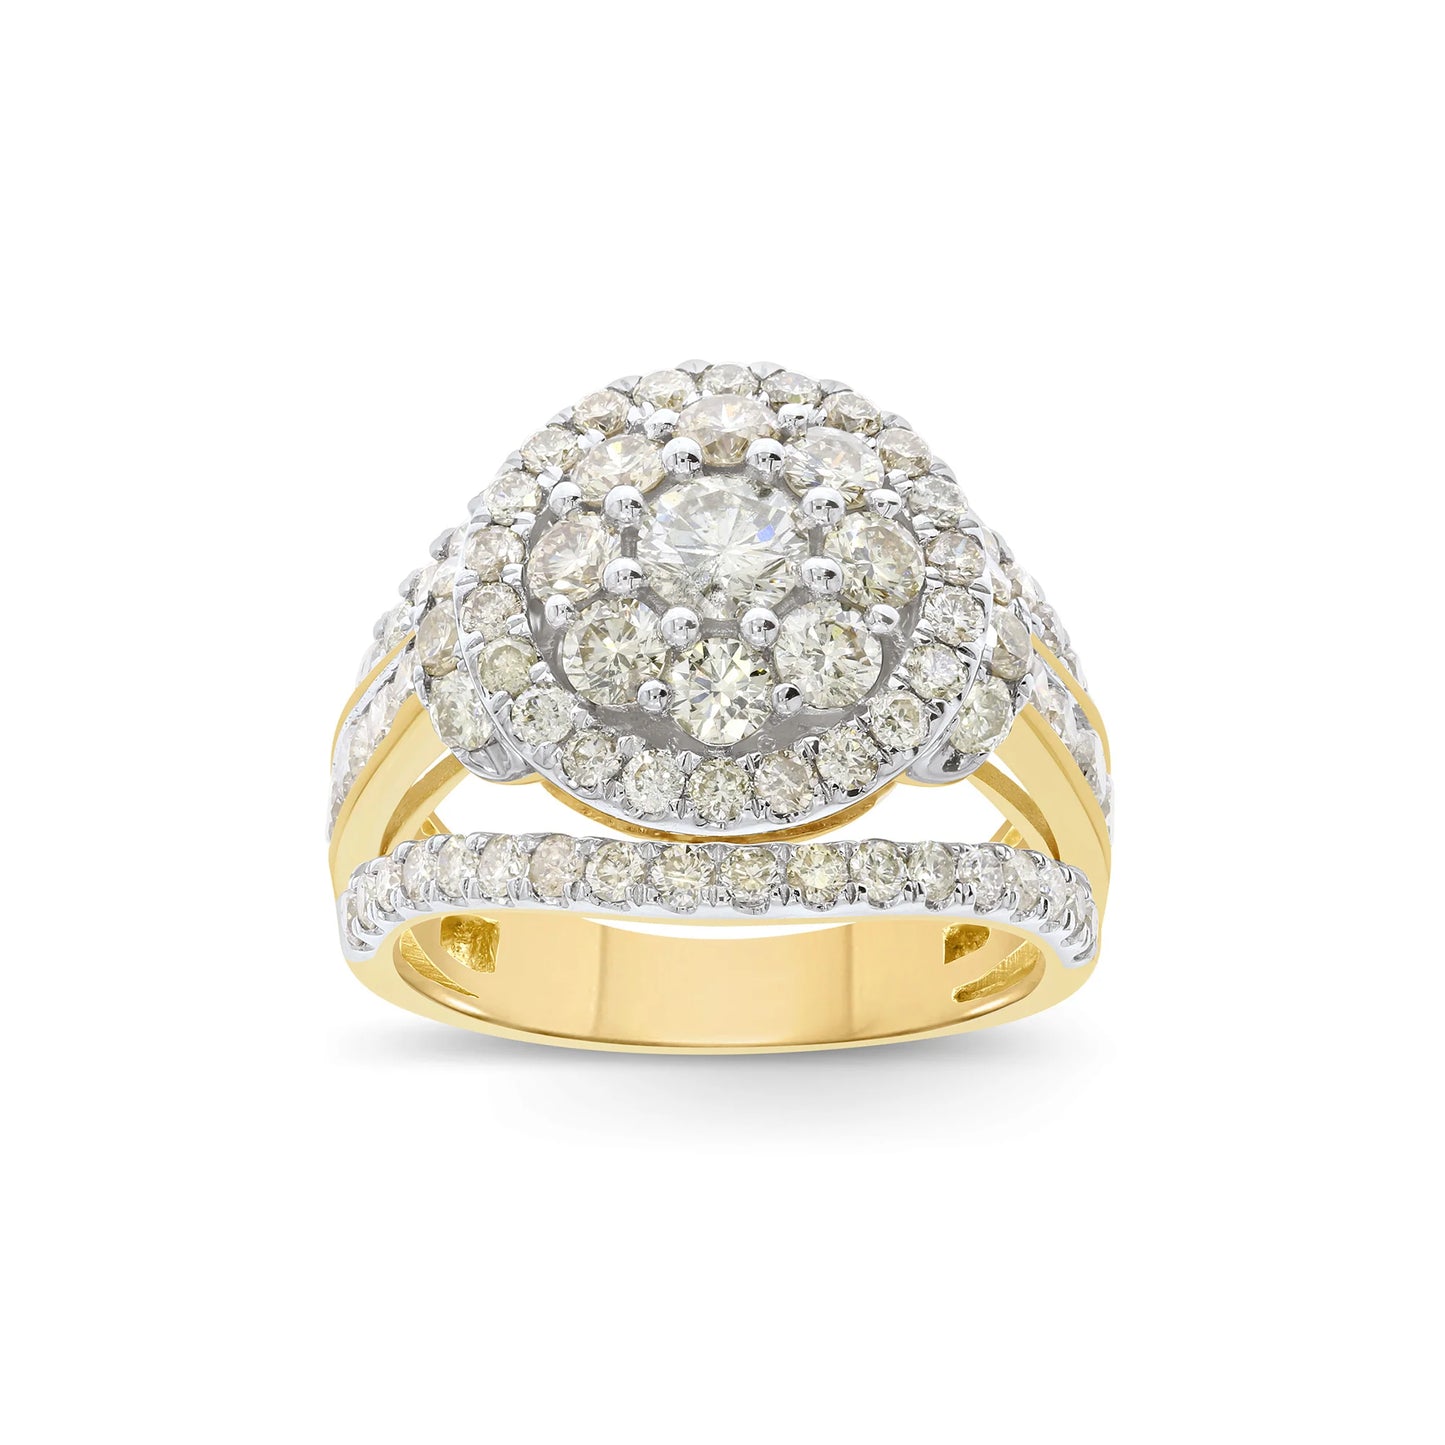 10K YELLOW GOLD 3.25 CARAT WOMEN REAL DIAMOND ENGAGEMENT RING WEDDING RING BRIDAL